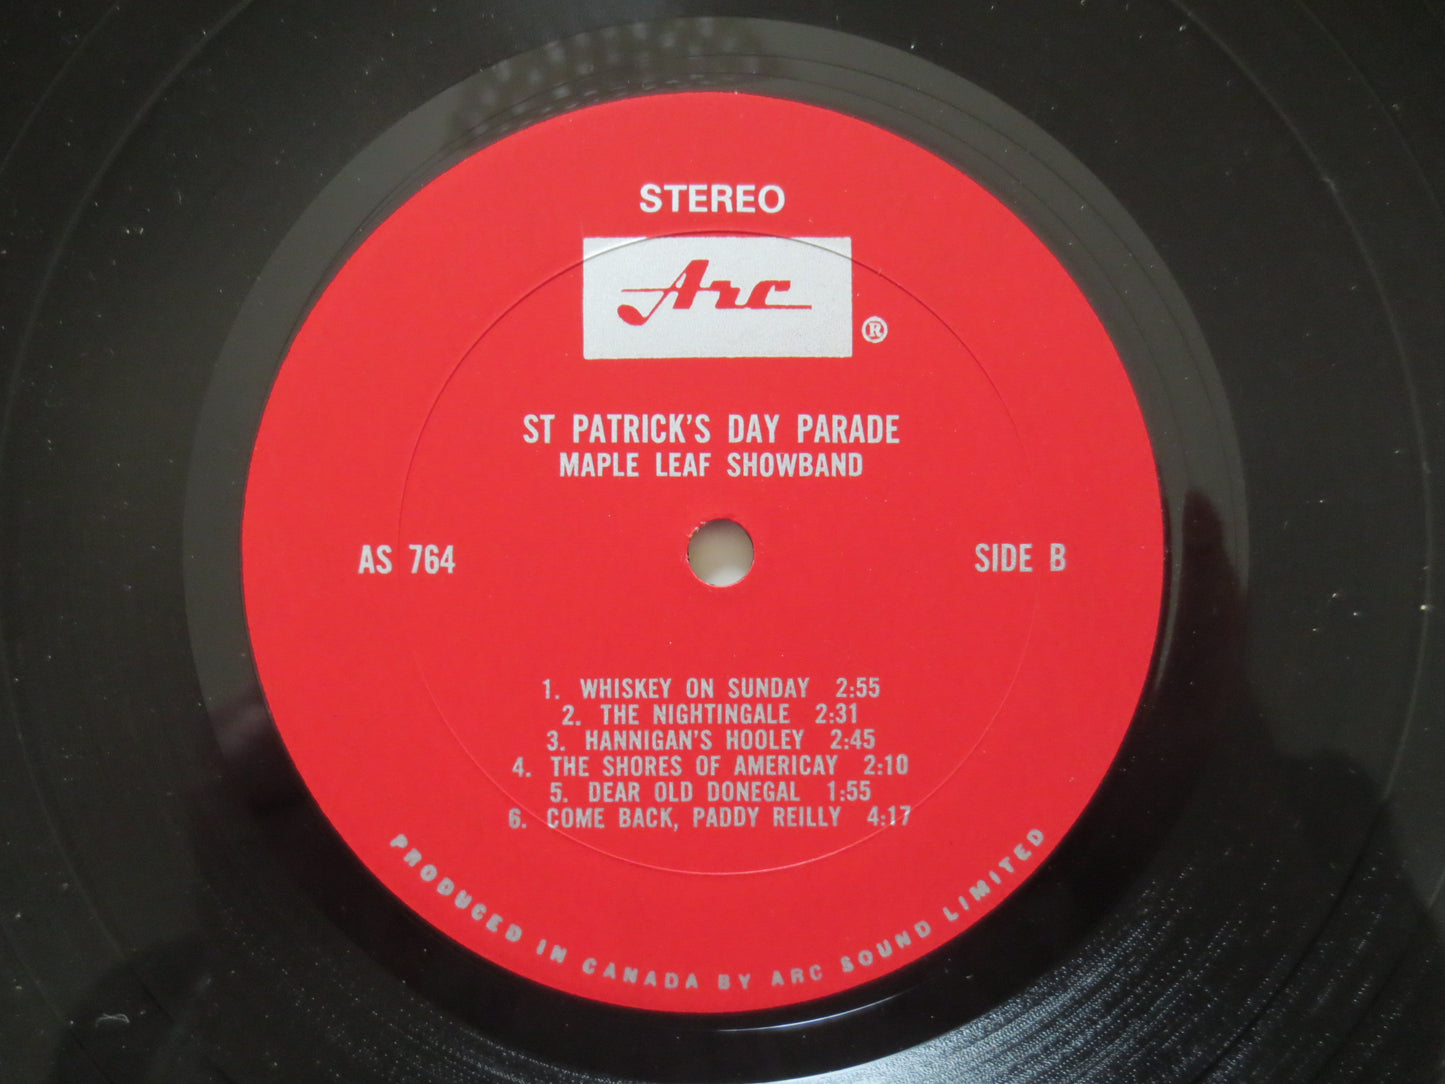 ST PATRICK'S DAY Lp, Maple Leaf Showband, Vintage Vinyl, Record Vinyl, Records, Vinyl Record, Vinyl Album, Lp, 1967 Records